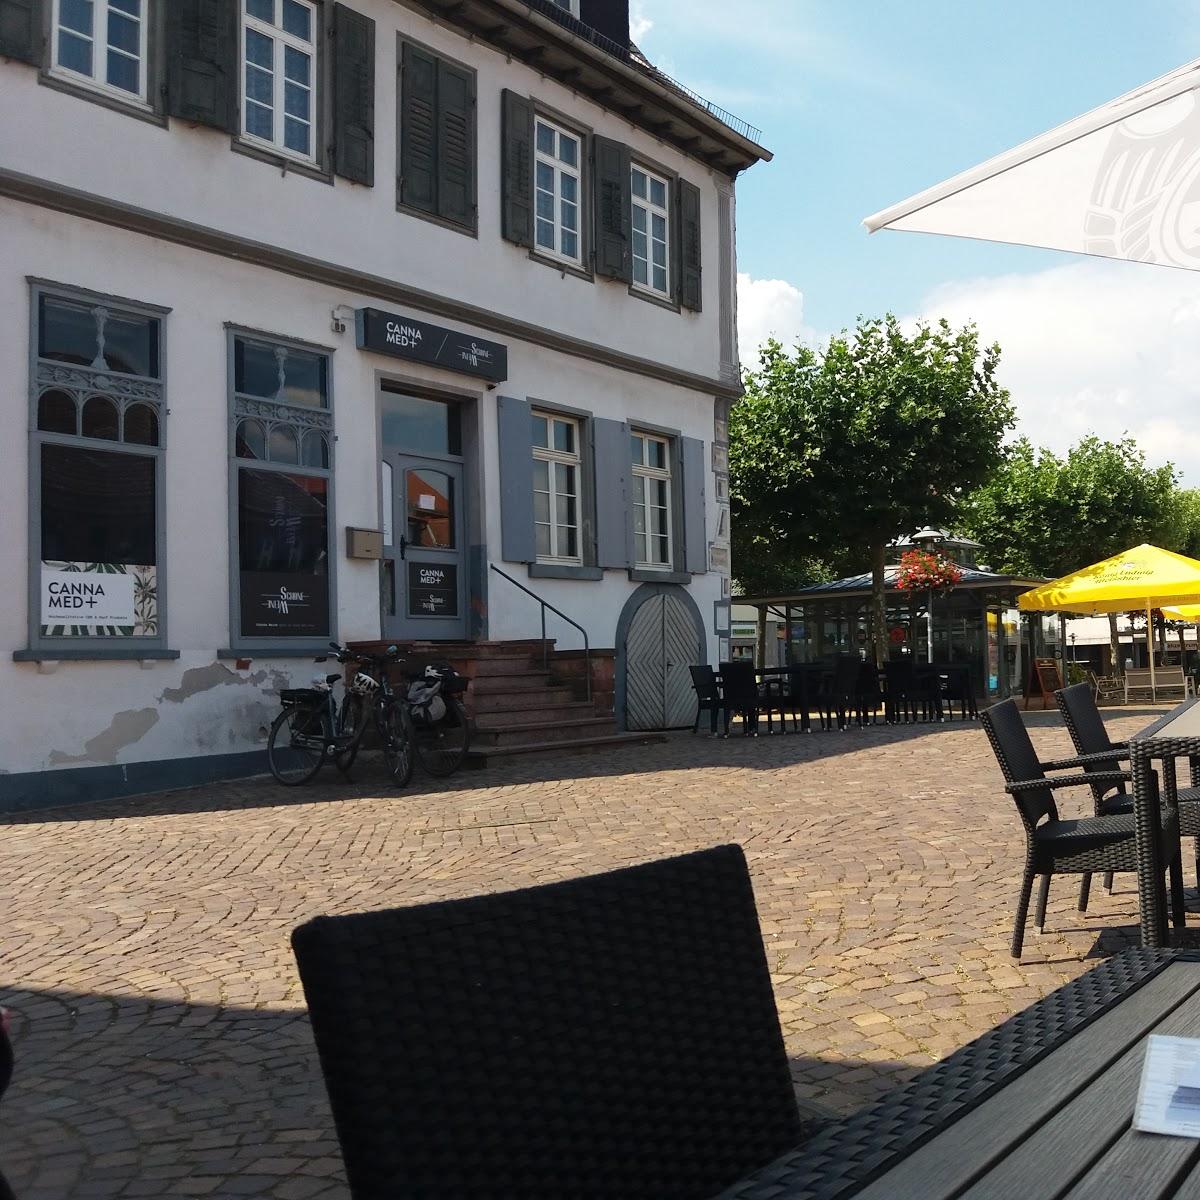 Restaurant "Krone-Keller" in Dieburg